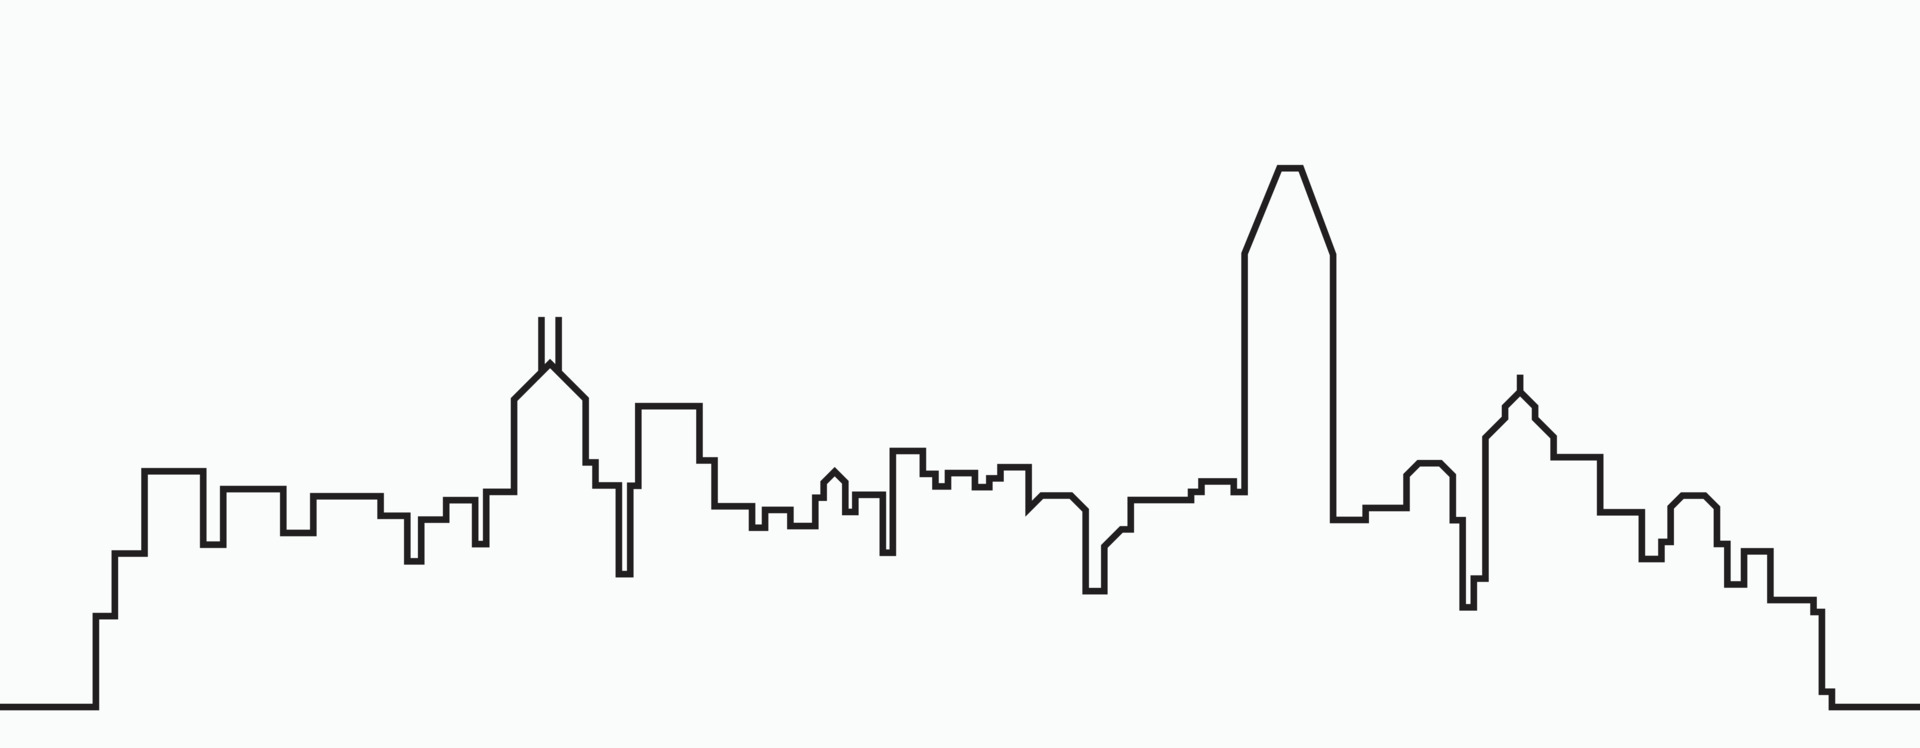 Share 81+ city skyline sketch latest - seven.edu.vn